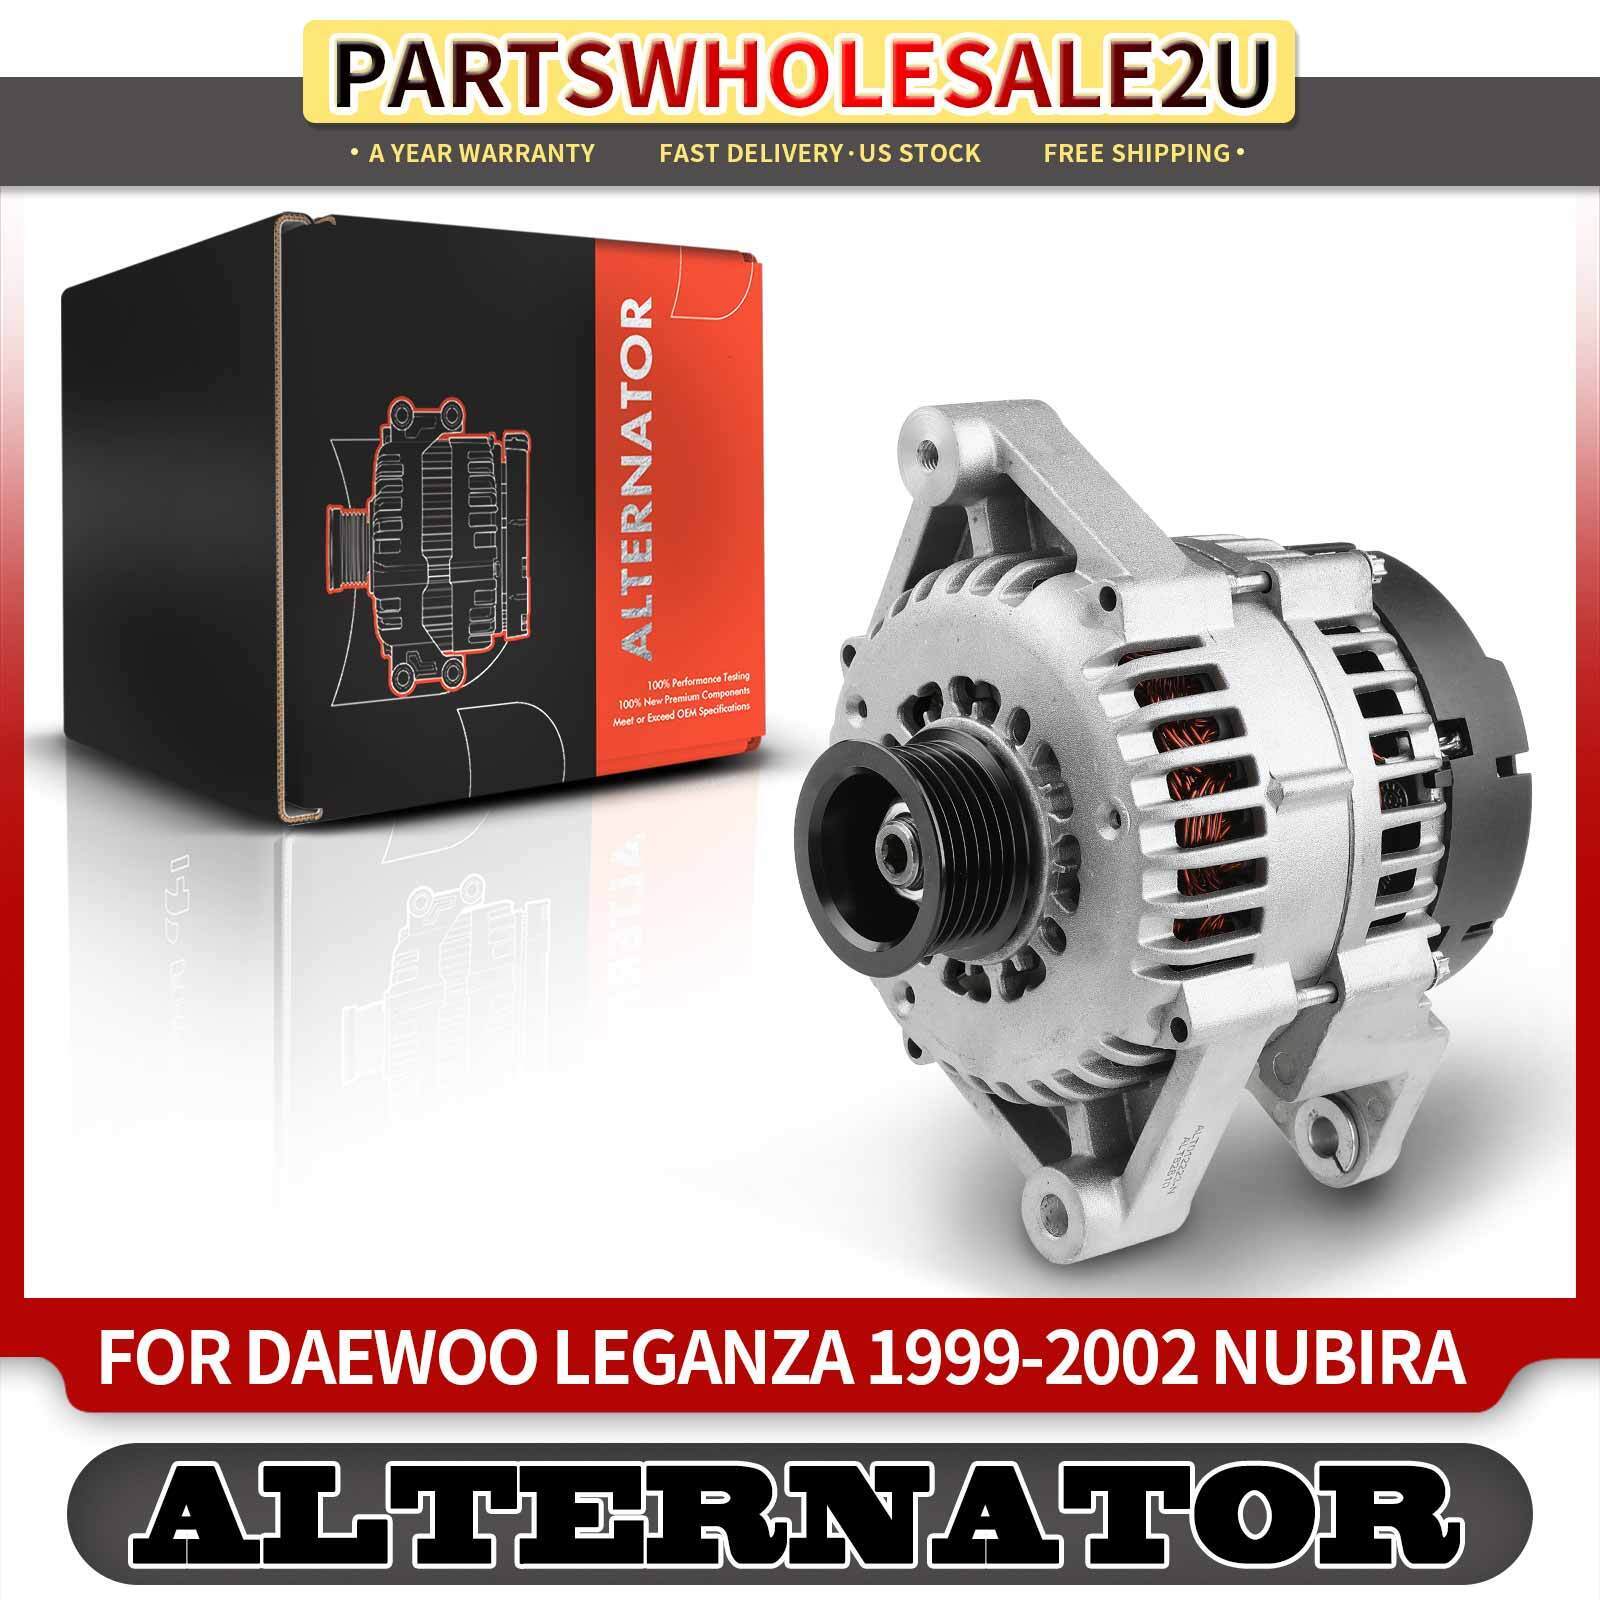 Alternator for Daewoo Leganza Nubira 1999 2000 2001 2002 105A 12V Clockwise 6G